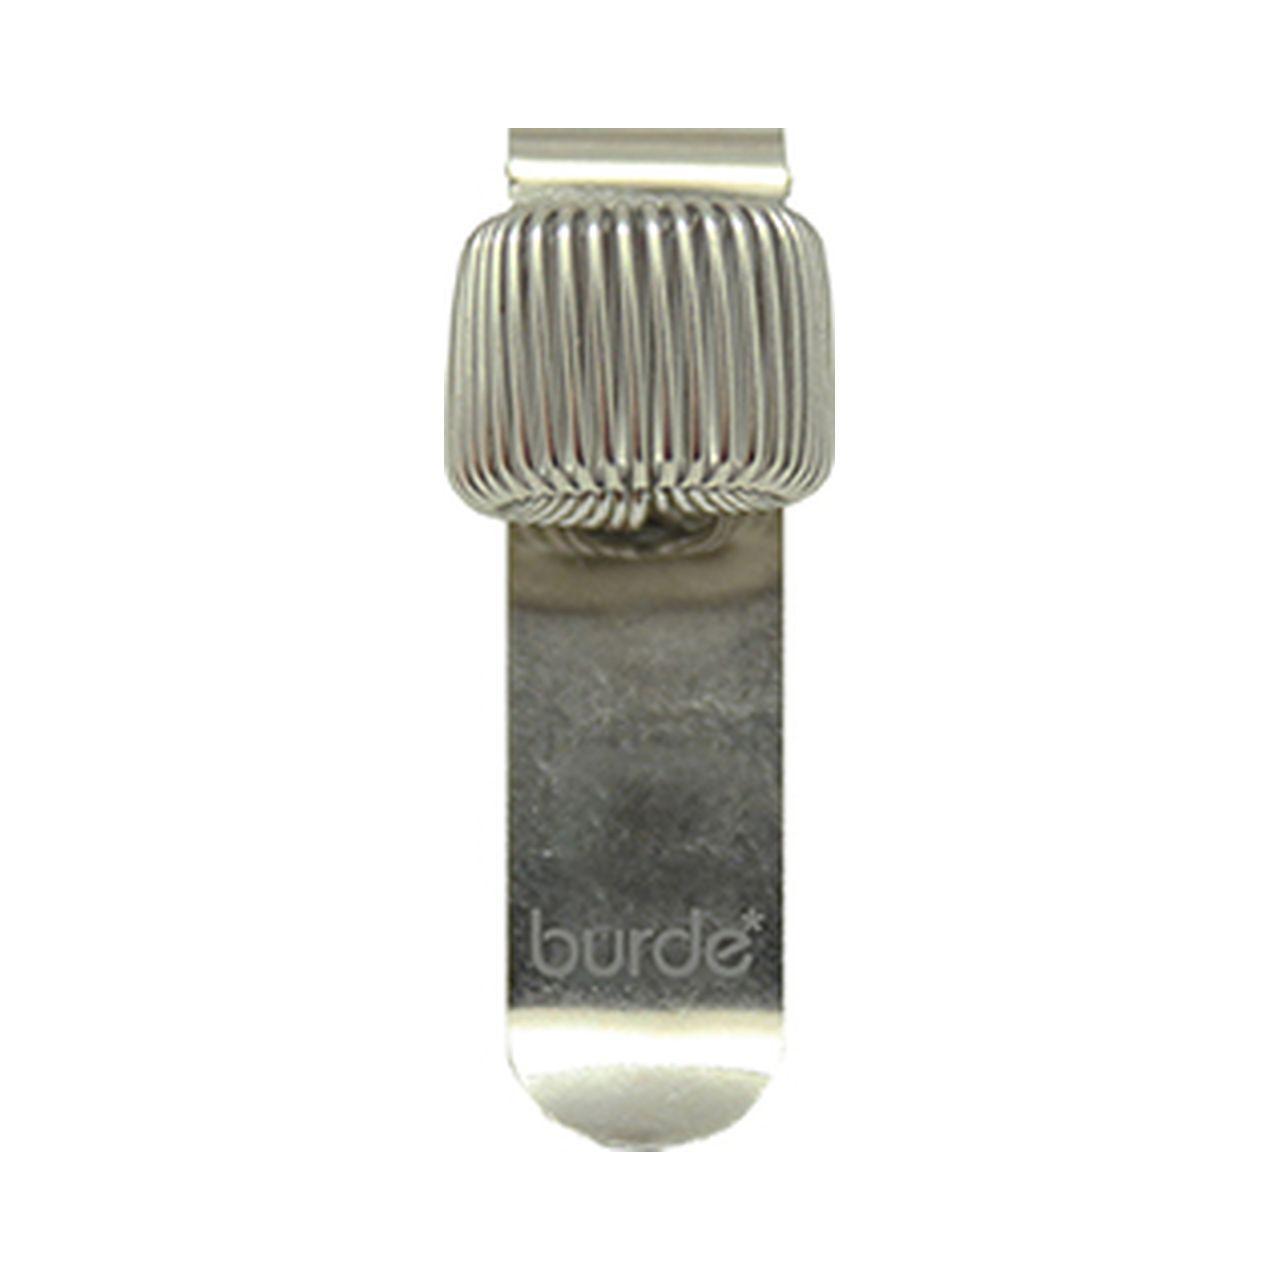 Pennhållare Burde för 1 st penna för fastsättning i ficka mm, Silver